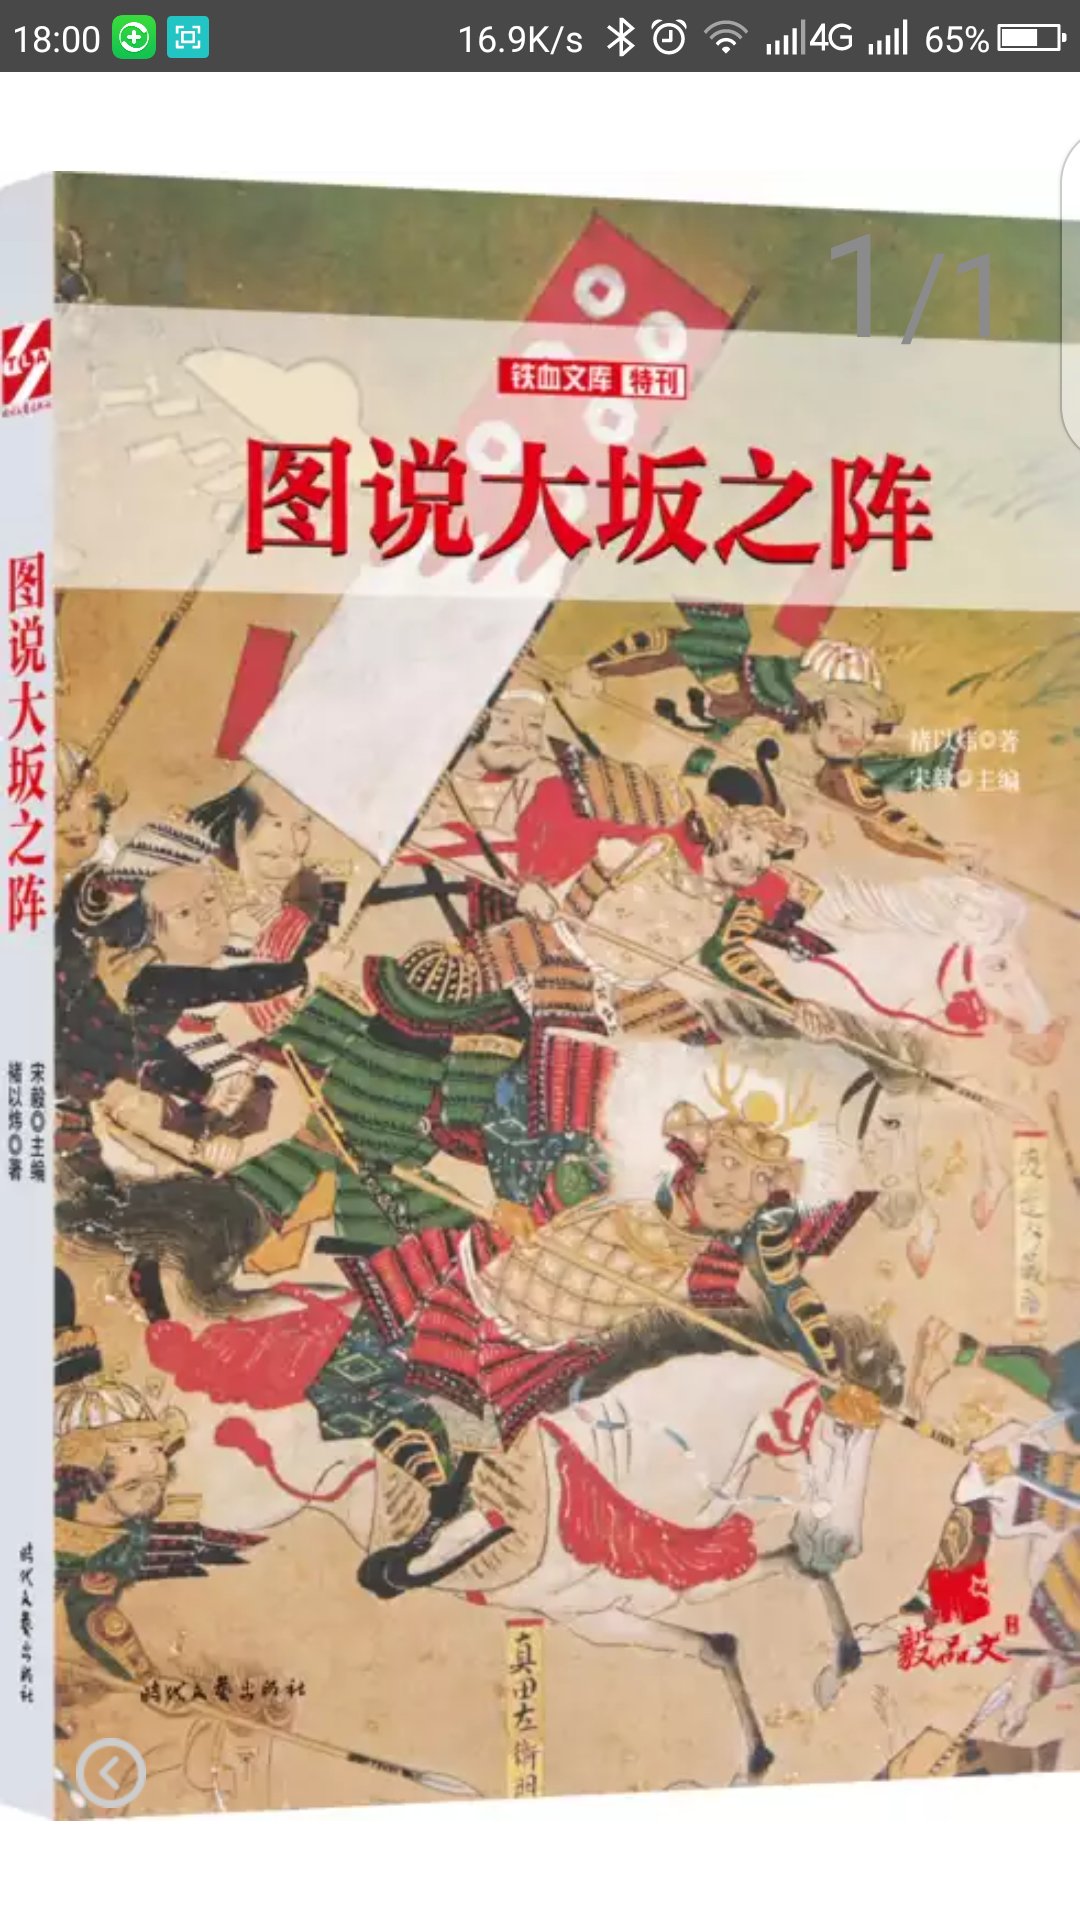 宫崎市定毕生致力于中国史的研究与教学，治学方法与中国“知人论世”的史学传统如符若契，又对司马迁顶礼膜拜，晚年曾计划将“人物论”的代表作品《史记&middot;列传》全译为日文。本书正是宫崎本人的“人物论”，也是他的著作中zui为通俗好读的一部，收录了他在漫长的研究生涯中重点关注过的人物，包括“大帝与名君”（秦始皇、汉武帝、隋炀帝、康熙、雍正），“乱世宰相”（李斯、冯道、贾似道），“资本家与地方官”（晋阳李氏、宋江、蓝鼎元），“儒家与文人”（孔子、朱子、张溥、石涛），涵盖各个时代和阶层，极具代表性。    作者以深厚的史学功底为基础，以独特的视角、生动的文风，对这些历史上“ZUI有料”的人物之魅力、功罪和时代进行描绘，抽丝剥茧般的分析与想象力飞扬的叙事融合无间，重现了司马迁以降摄人心魄的历史叙述。